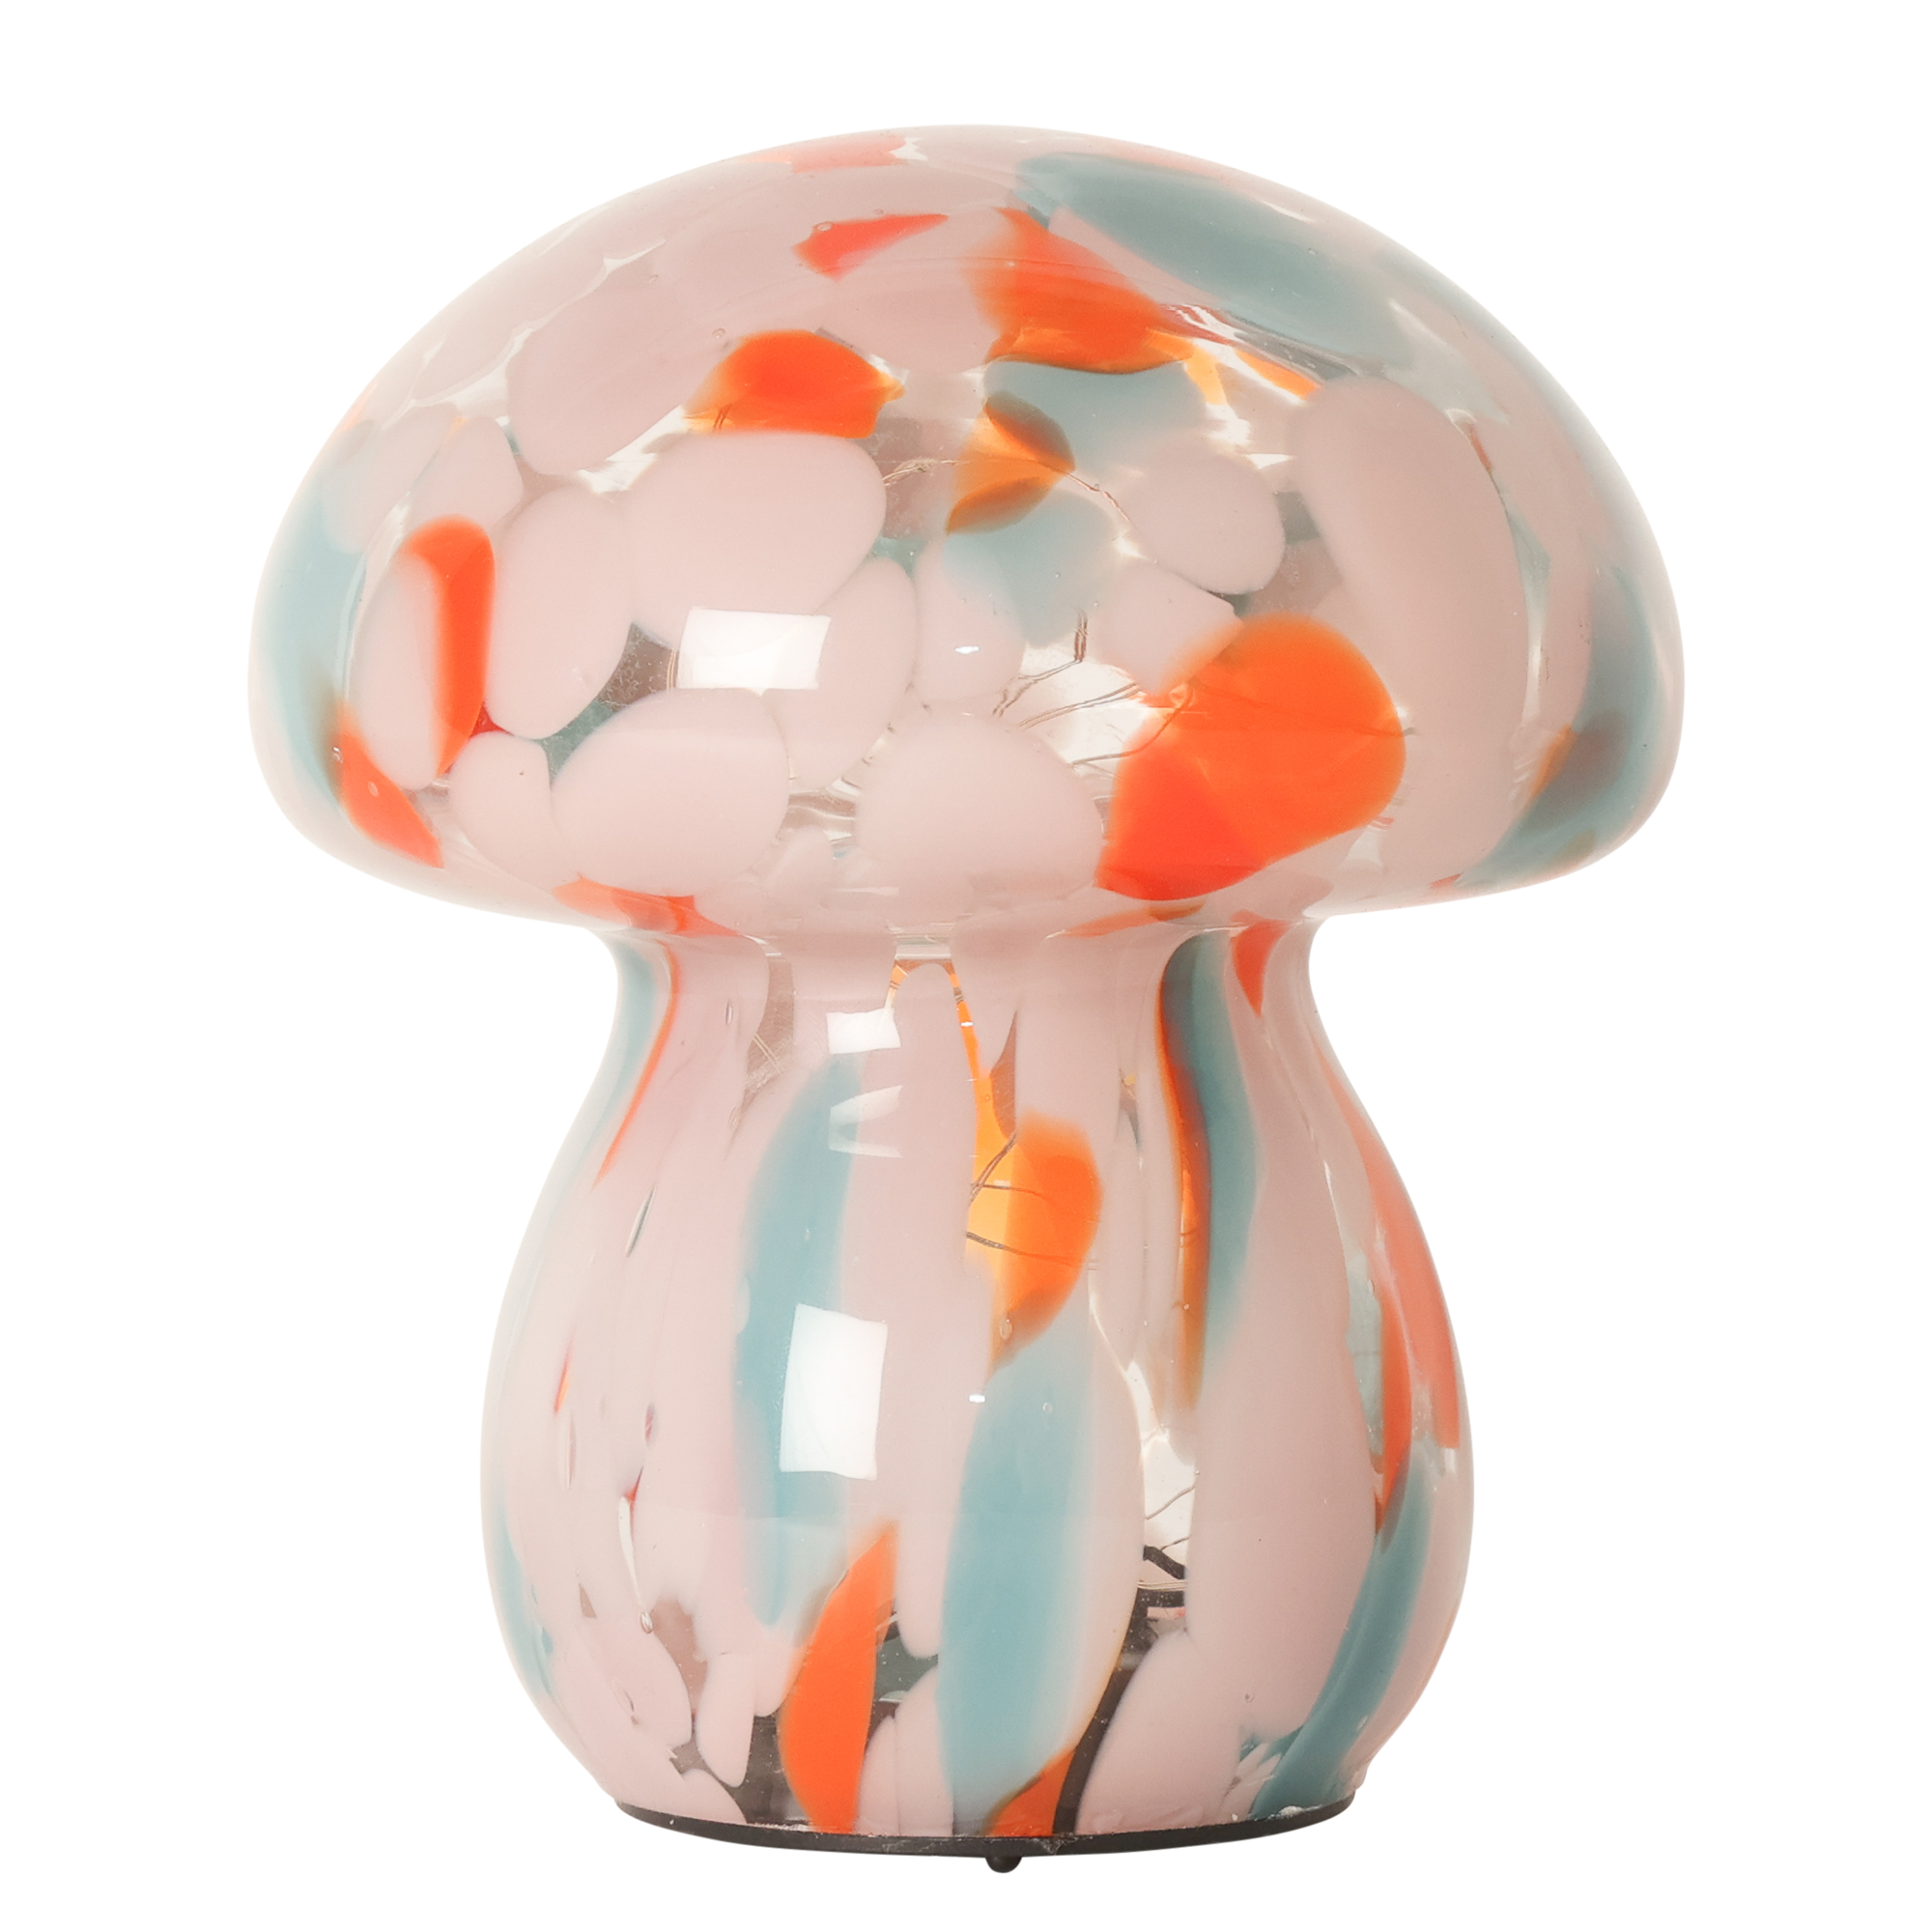 Billede af Mushroom lampe i glas, rosa/orange/lys blå